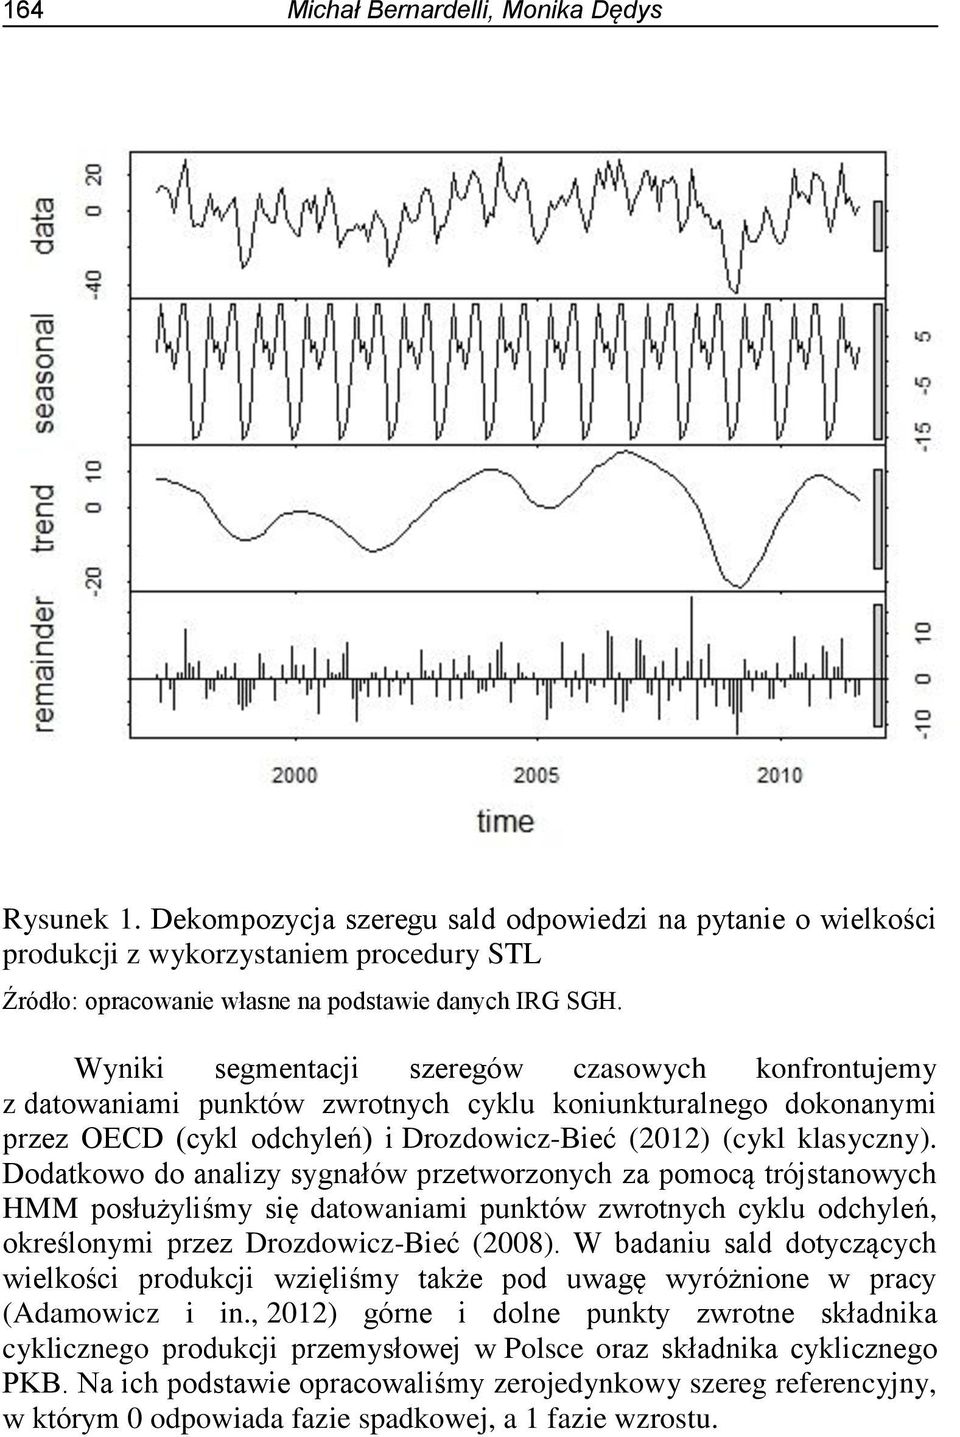 Dodatkowo do analizy sygnałów przetworzonych za pomocą trójstanowych HMM posłużyliśmy się datowaniami punktów zwrotnych cyklu odchyleń, określonymi przez Drozdowicz-Bieć (2008).